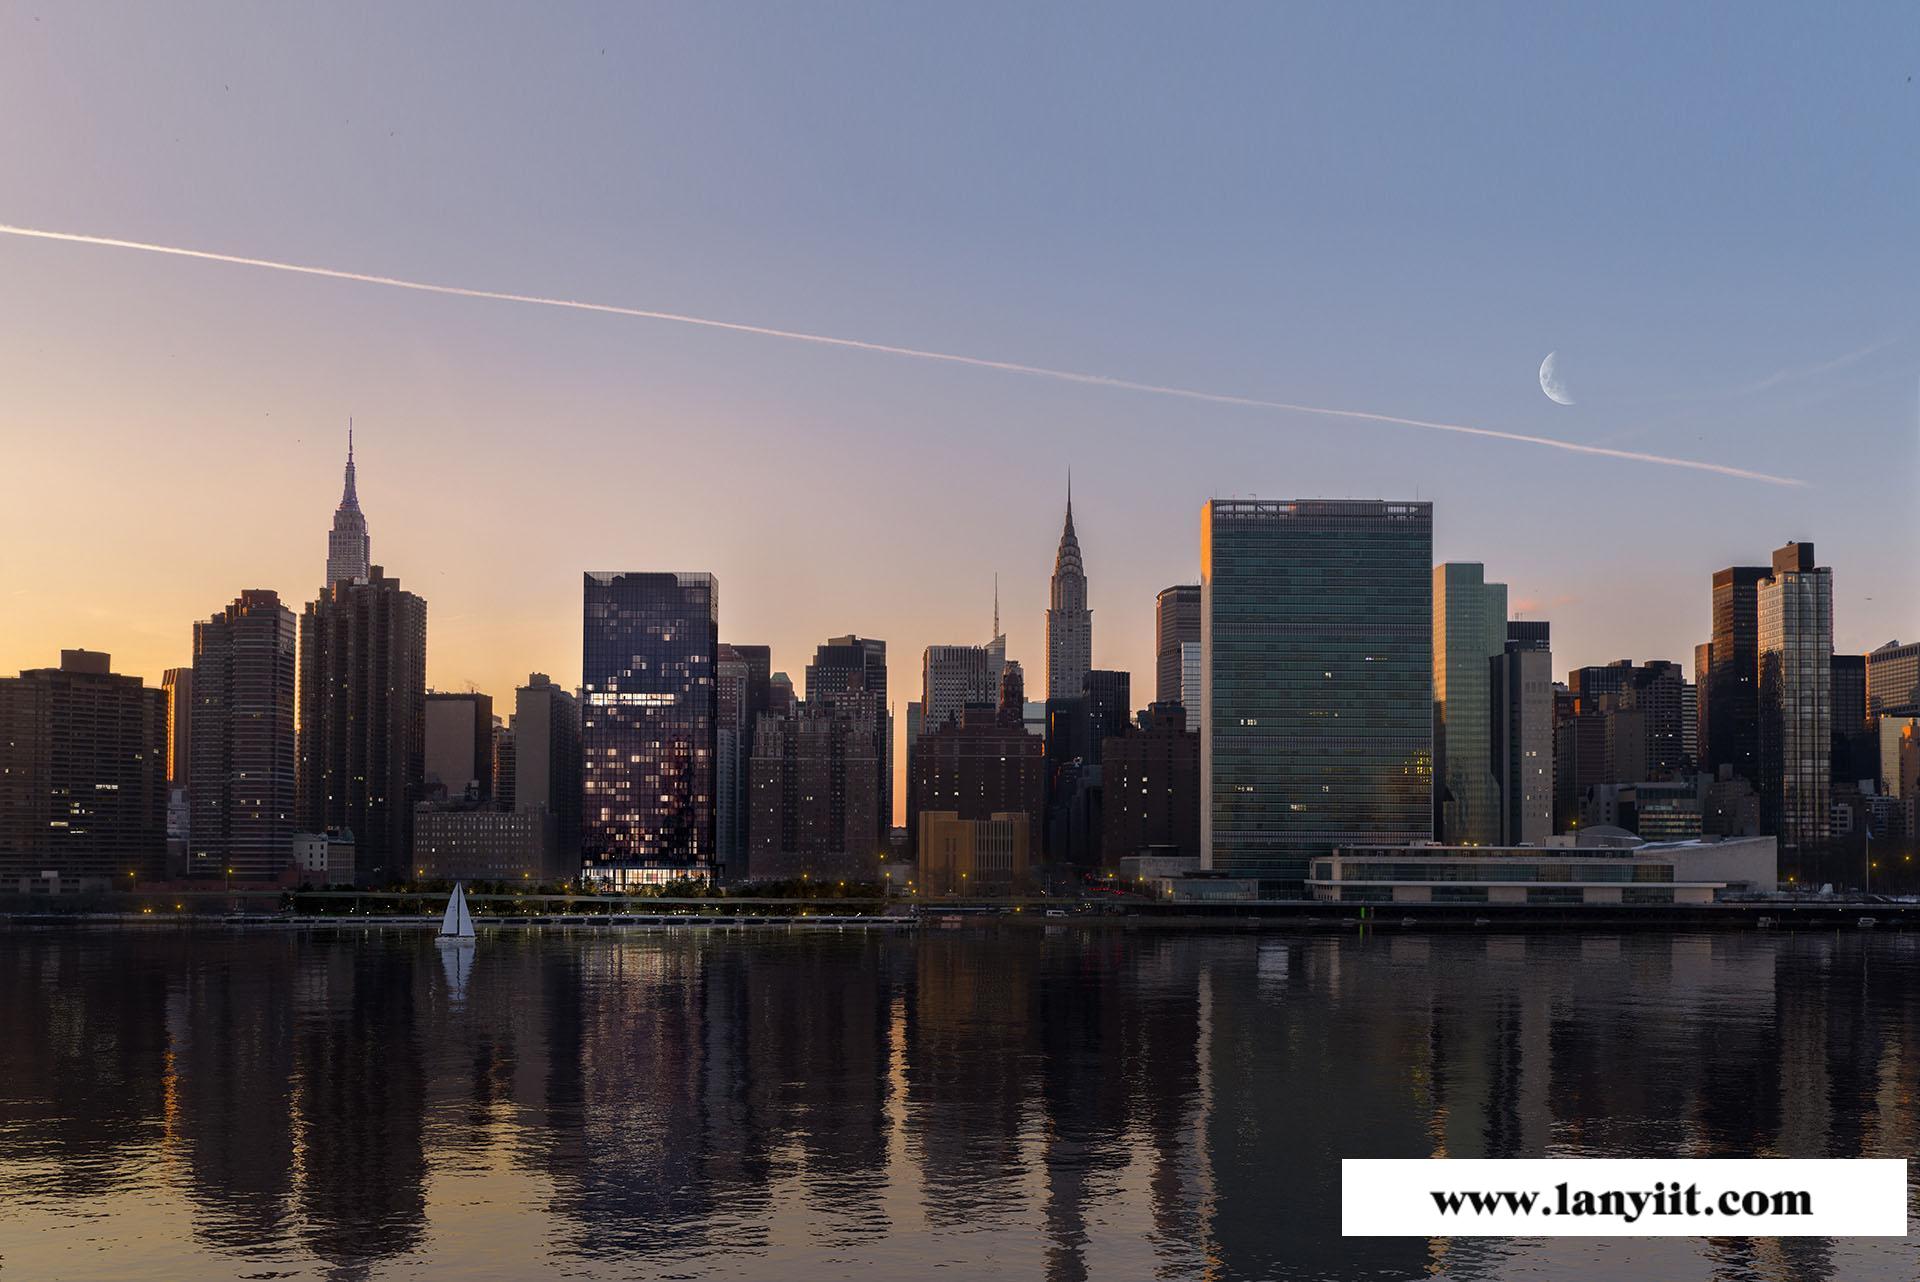 曼哈顿东高端楼盘推荐:联合国一号 全玻璃幕墙 坐享无敌河景和曼哈顿城市全景景观(图13)